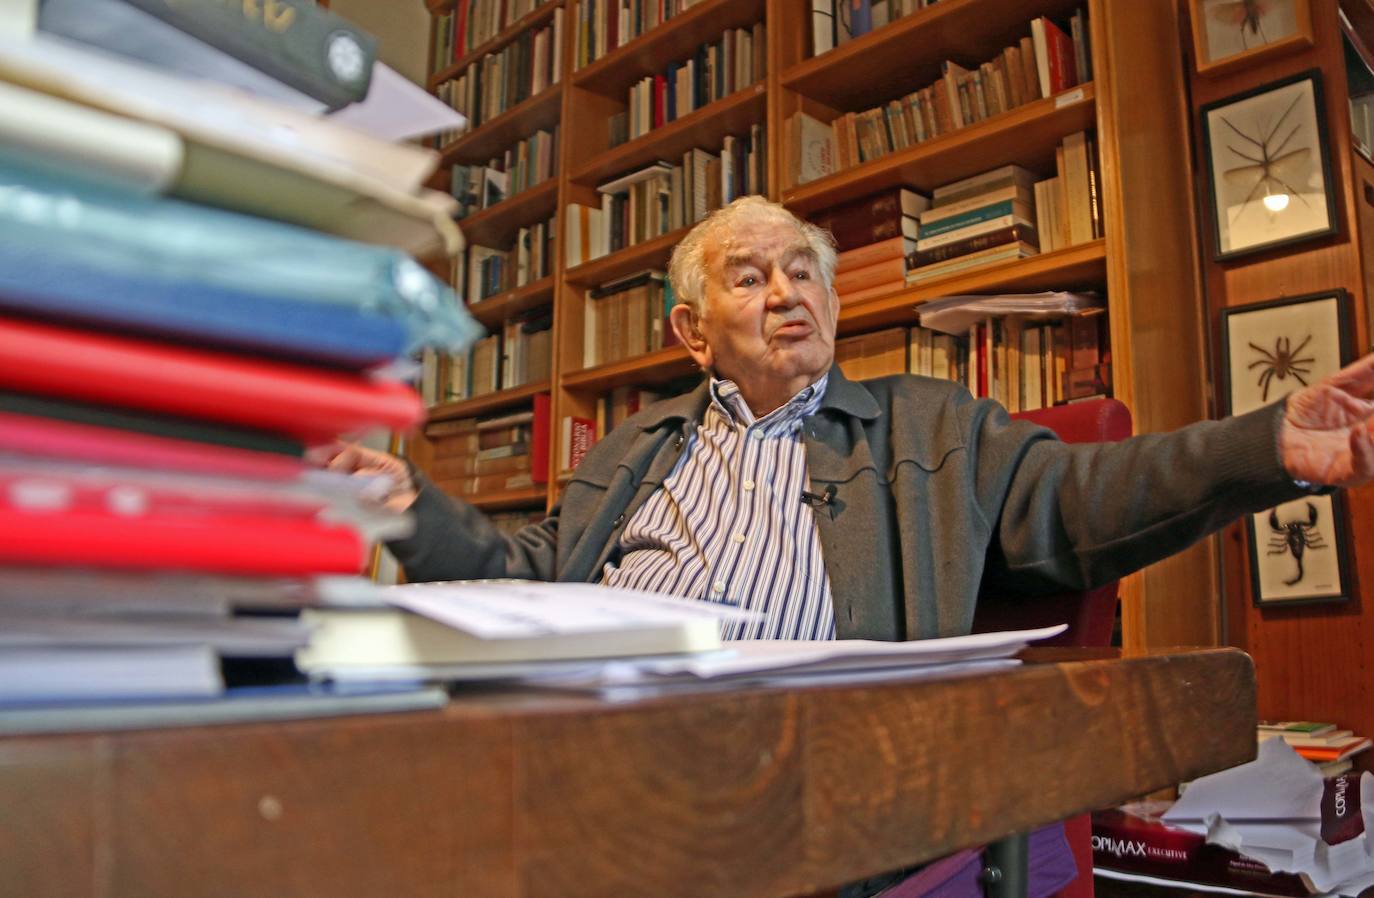 El escritor leonés Antonio Gamoneda en su casa, antes de la llegada de la pandemia.